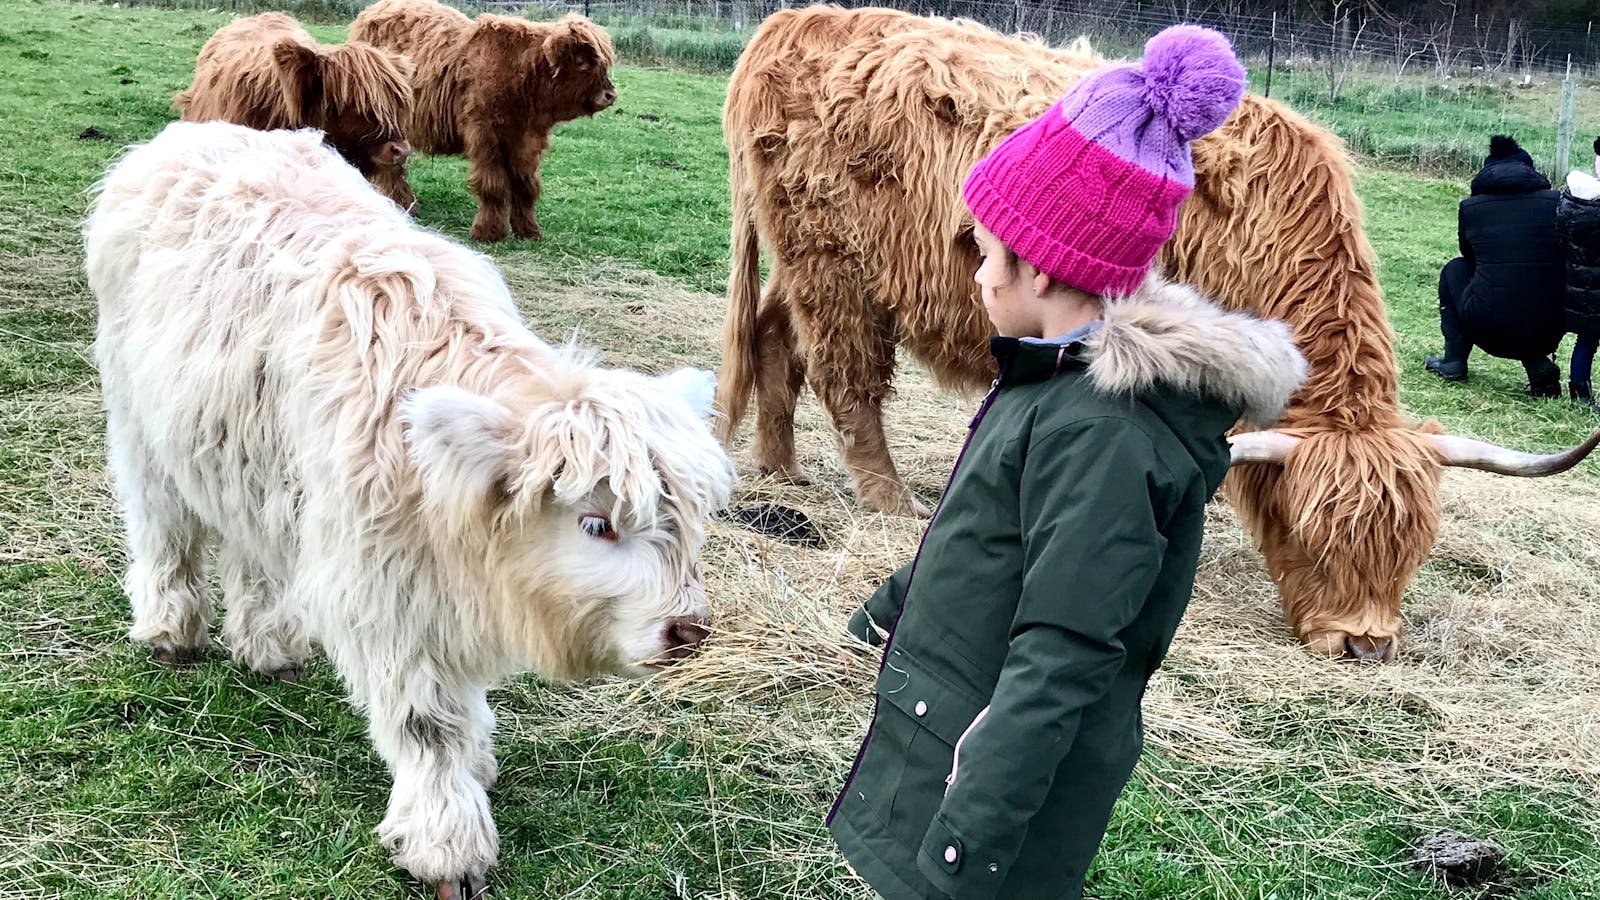 Kids love feedings the calves